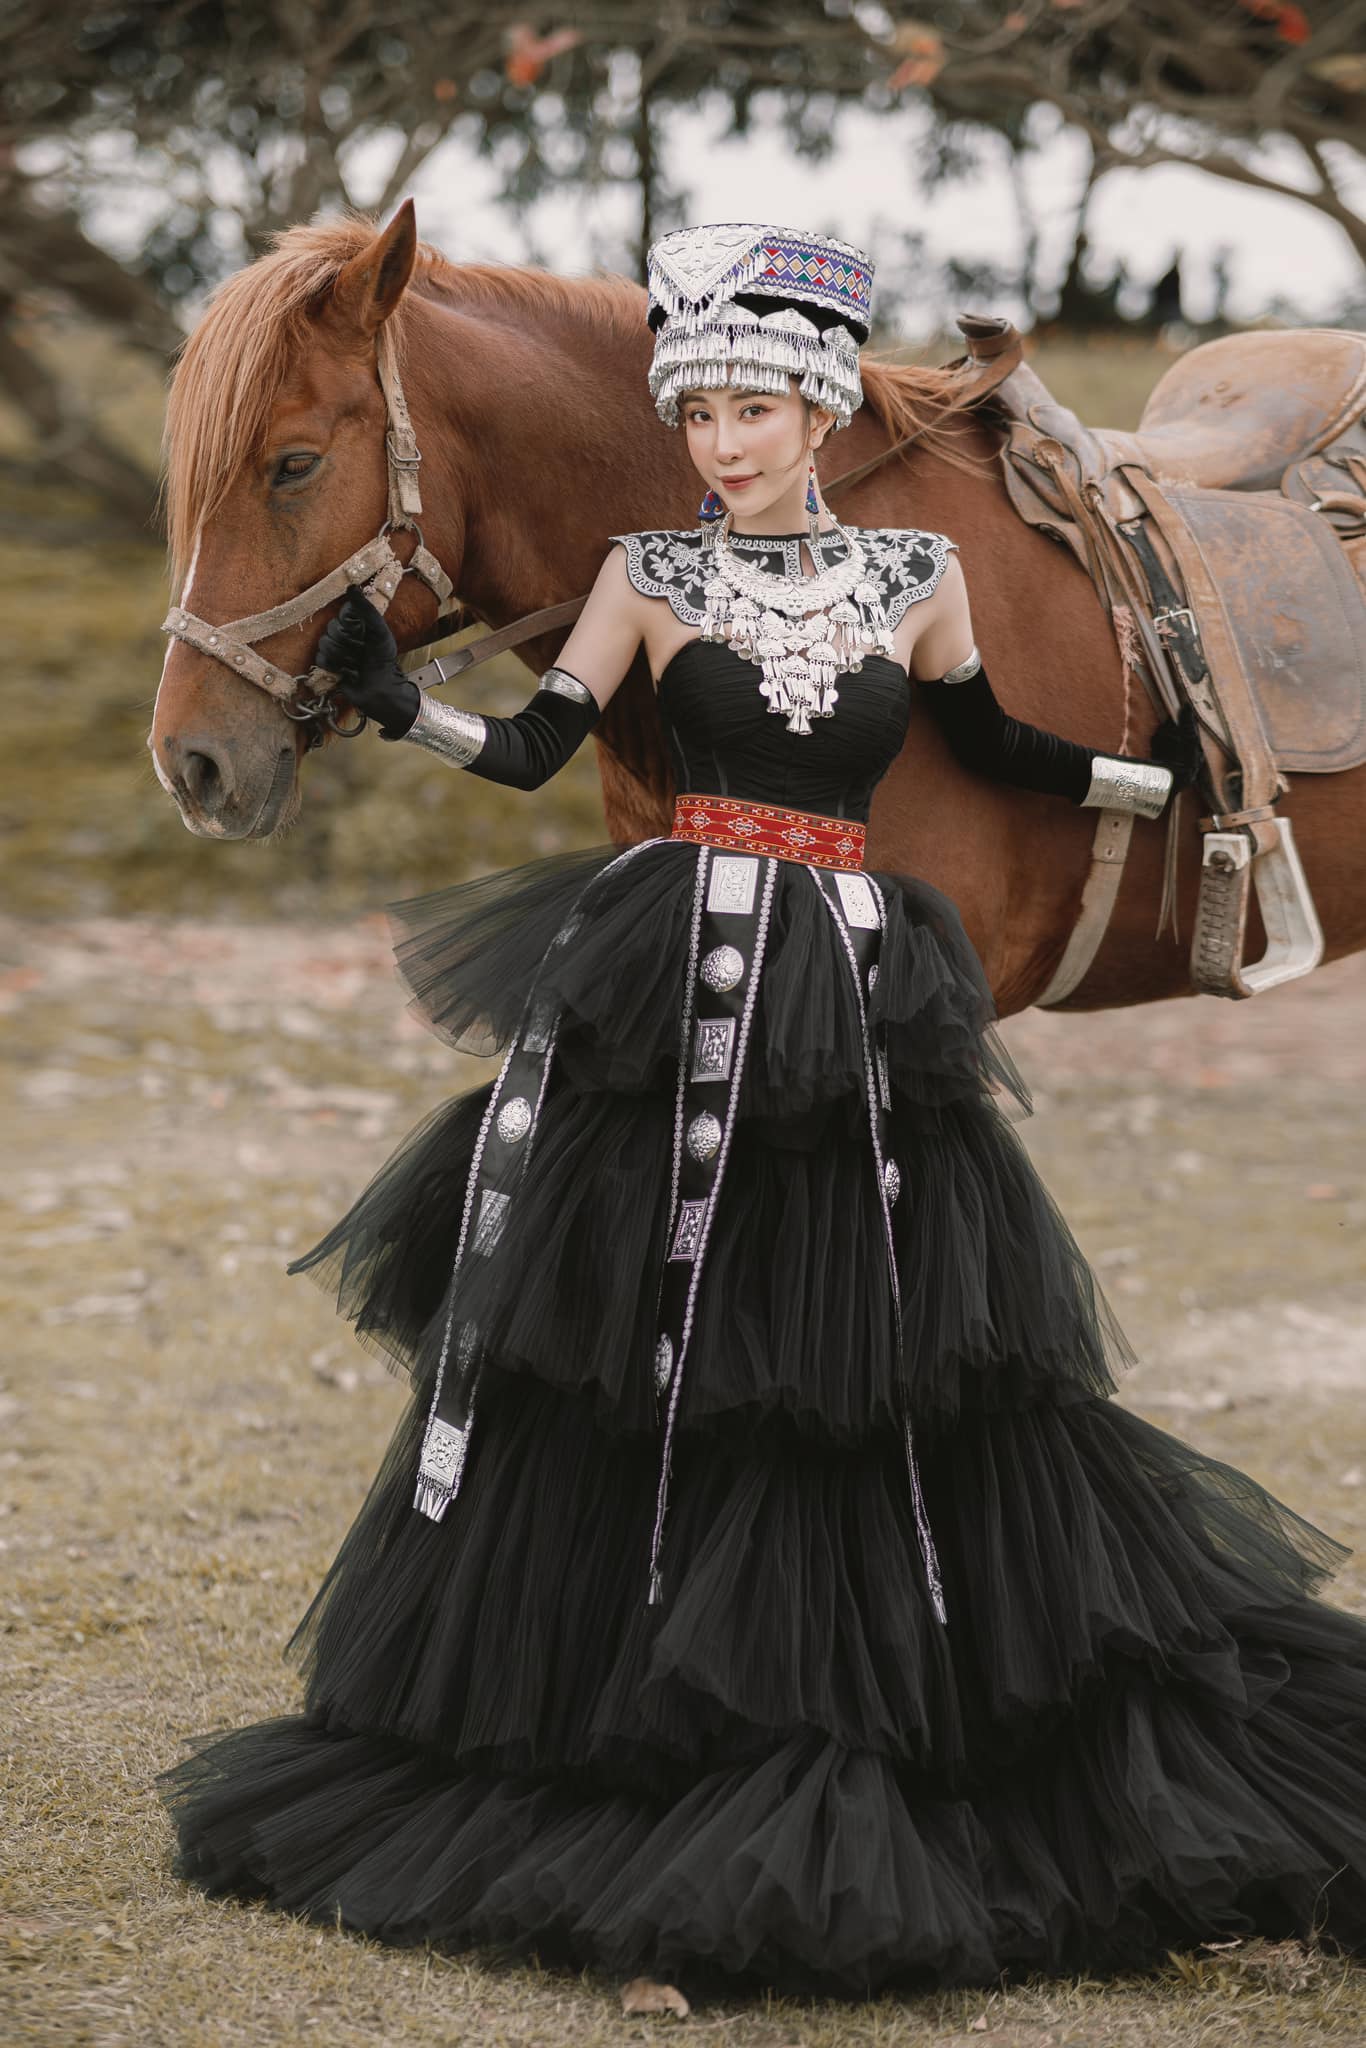 'Cá sấu chúa' Quỳnh Nga hóa công chúa Mông Cổ, cưỡi ngựa bắn cung đẹp như phim cổ trang Hoa ngữ - Ảnh 2